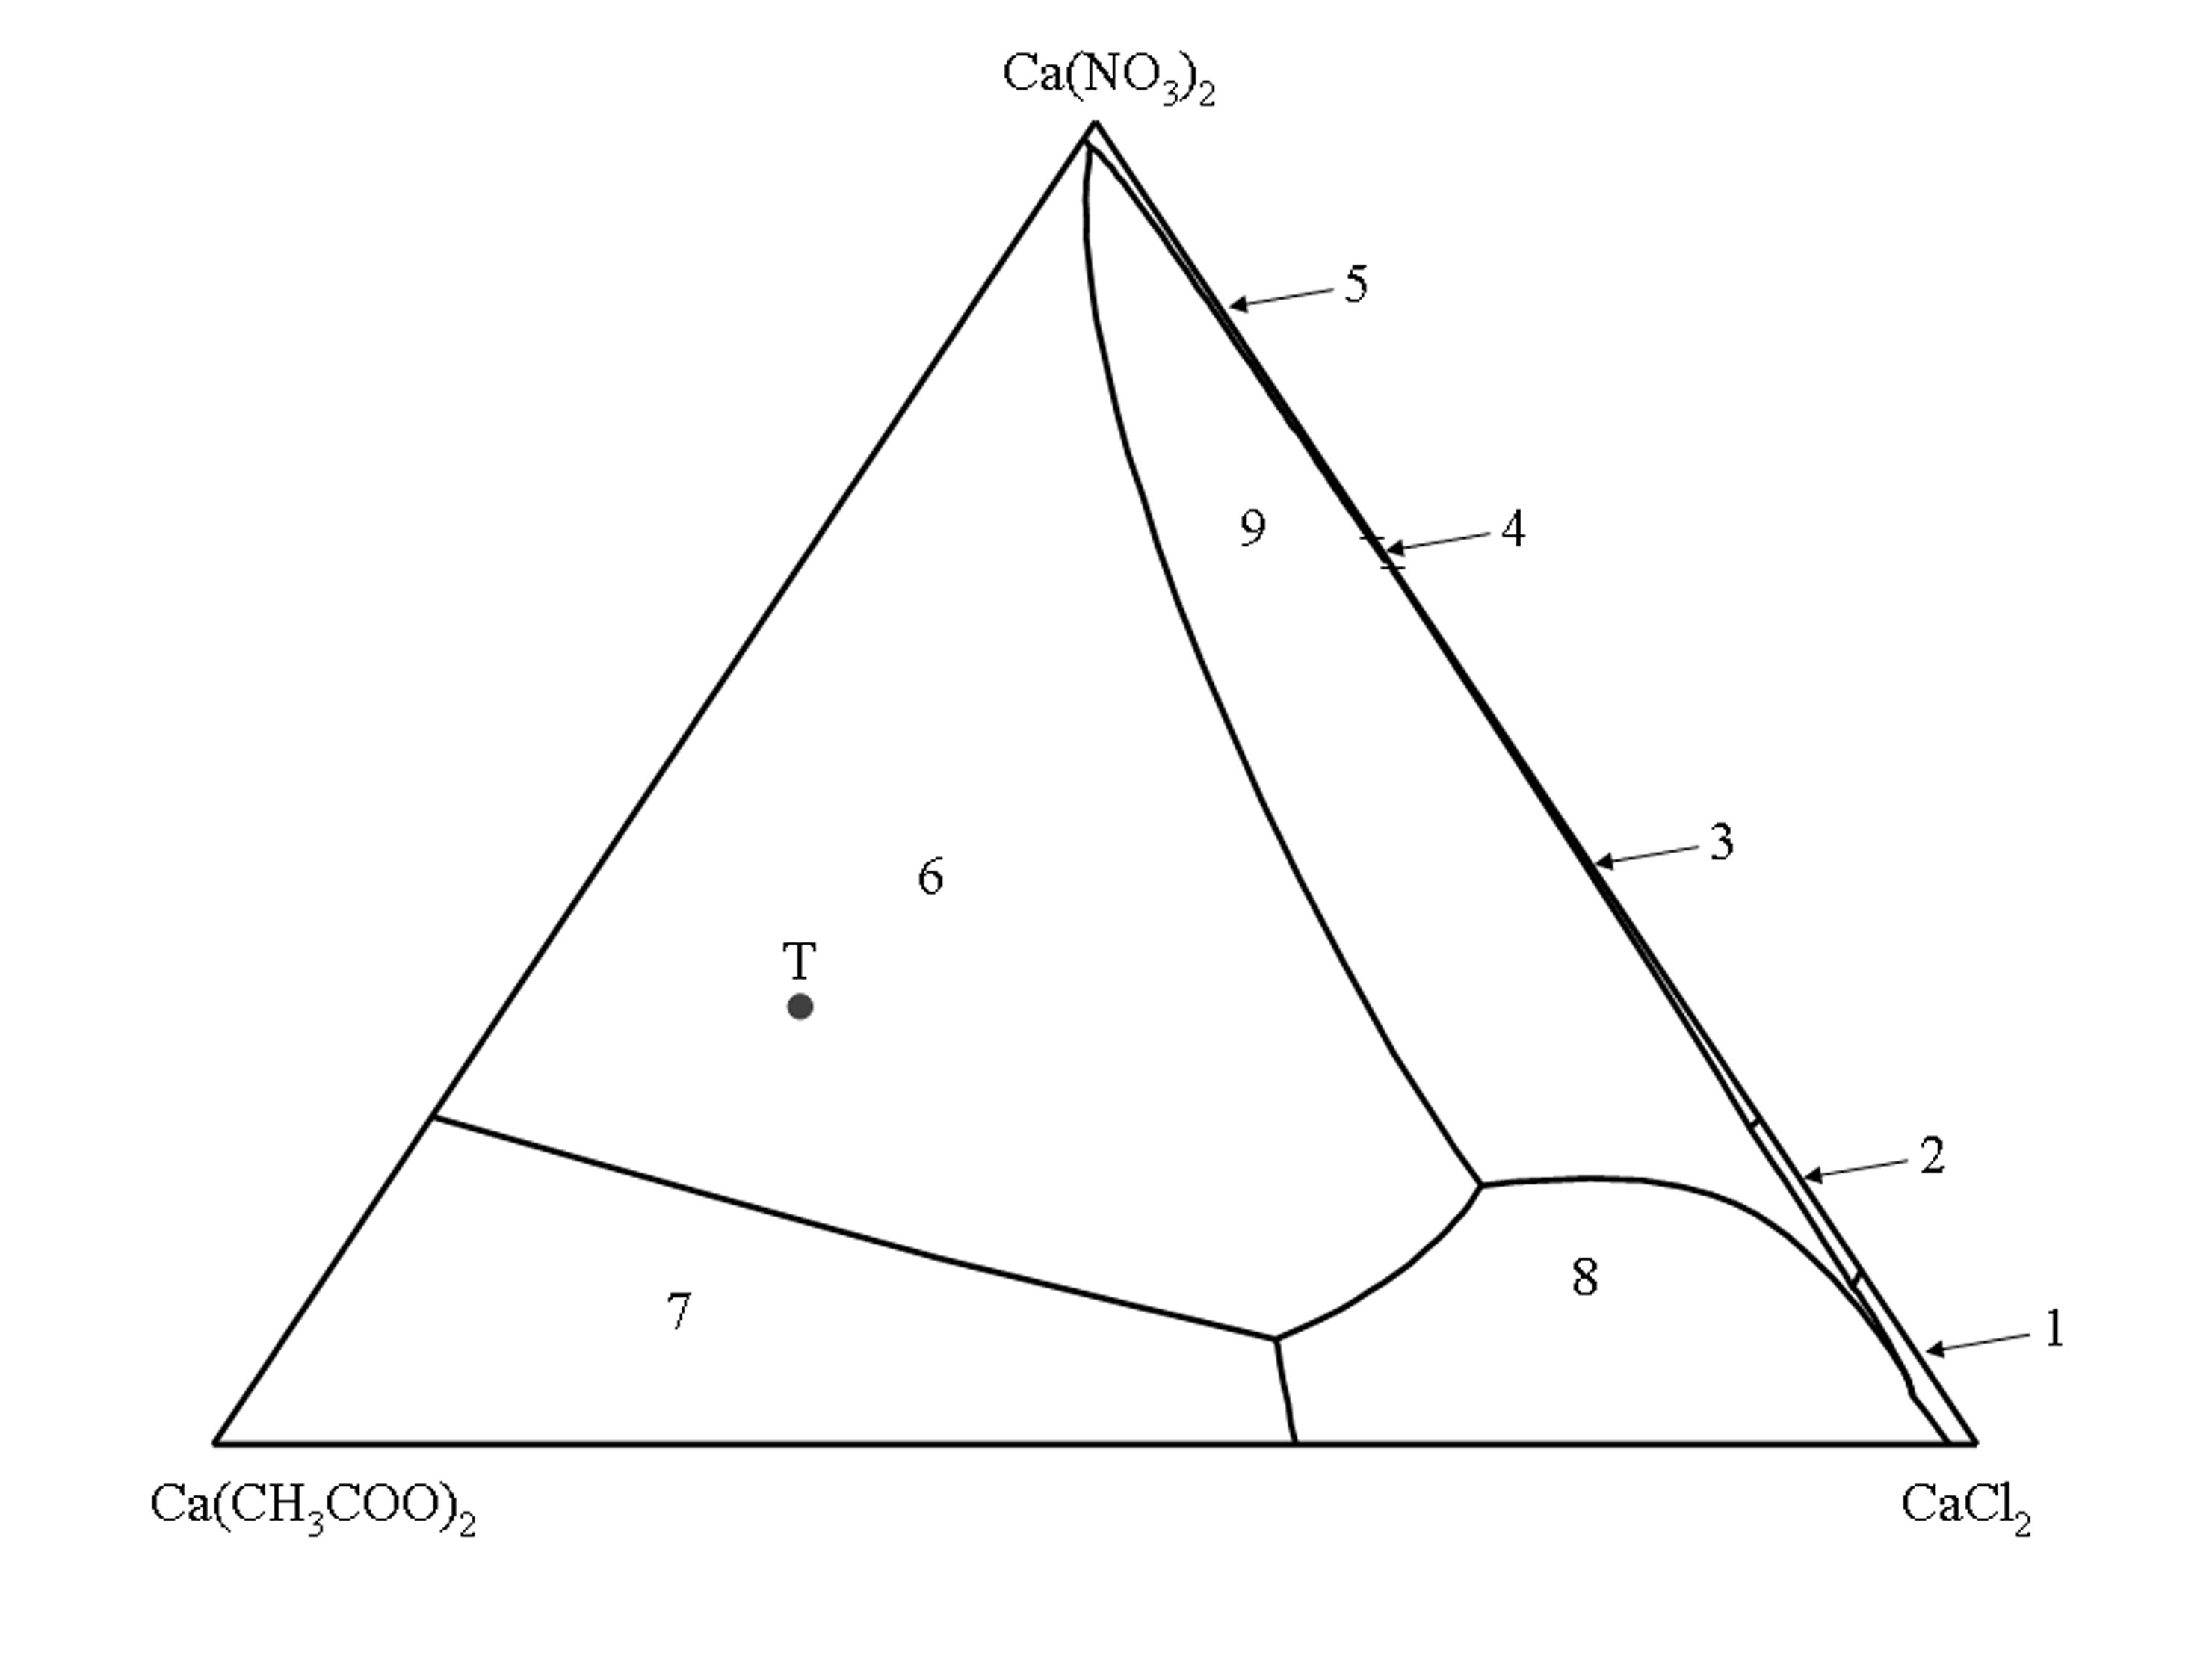 Die Nummer eines Stabilitätsfeldes verweist auf die Salzphase die im Gleichgewicht mit den gesättigten Lösungen eines Stabilitätsfeldes stehen wie folgt: (1) CaCl2 • 6H2O, (2) CaCl2 • 4H2O, (3) CaCl(NO3) • 2H2O, (4) Ca(NO3)2 • 3H2O, (5) Ca(NO3)2 • 4H2O, (6) Ca2(CH3COO)3(NO3) • 2H2O, (7) Ca(CH3COO)2 • H2O, (8) Ca(CH3COO)Cl • 5H2O, (9) Ca3(CH3COO)3Cl(NO3)2 • 7H2O. Punkt T im Phasendiagramm repräsentiert die Zusammensetzung des Tripelsalzes Thecotrichite (Ca3(CH3COO)3Cl(NO3)2 • 7H2O).